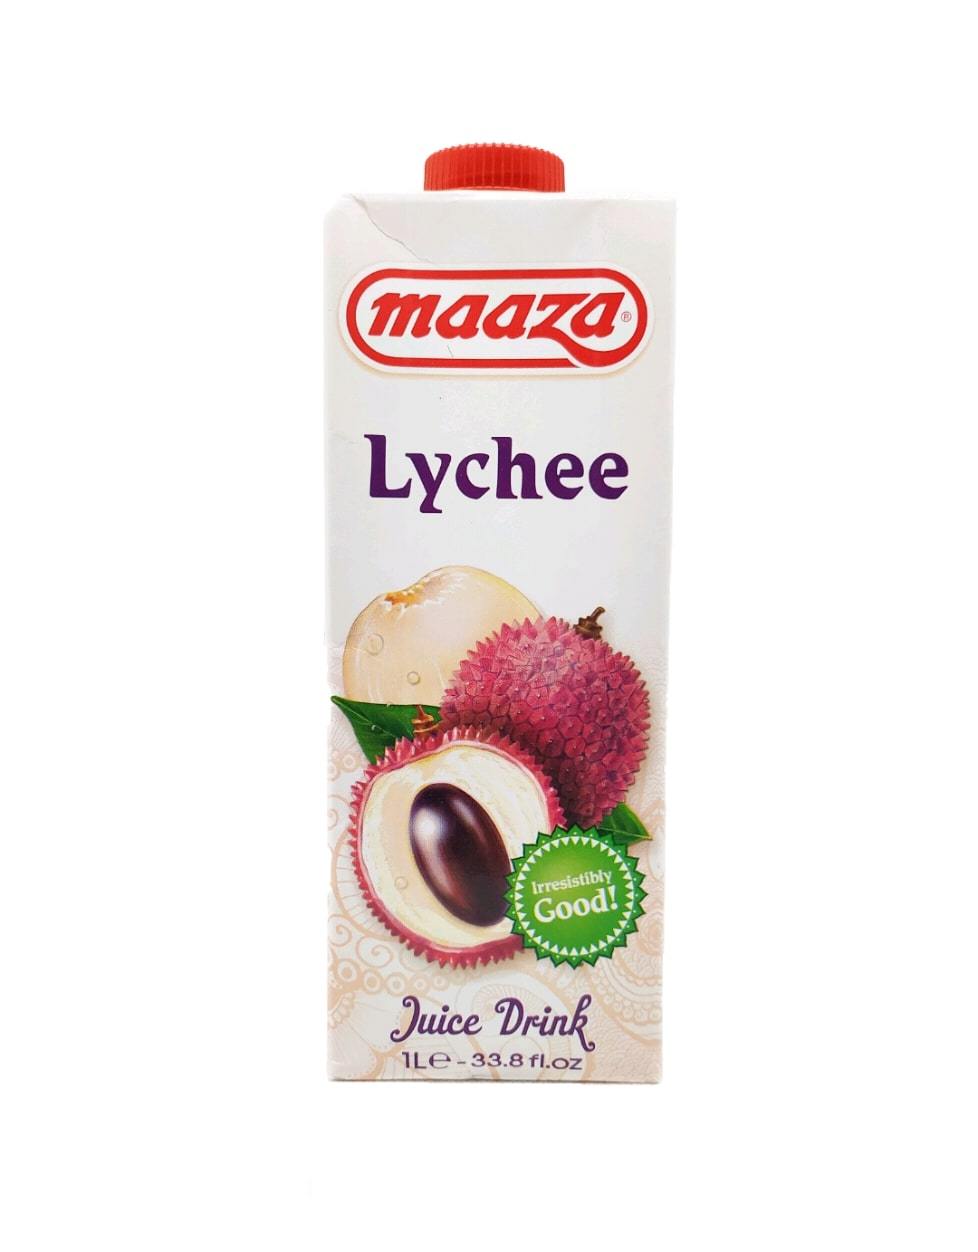 Produits orientaux en ligne: Maaza - Lychee